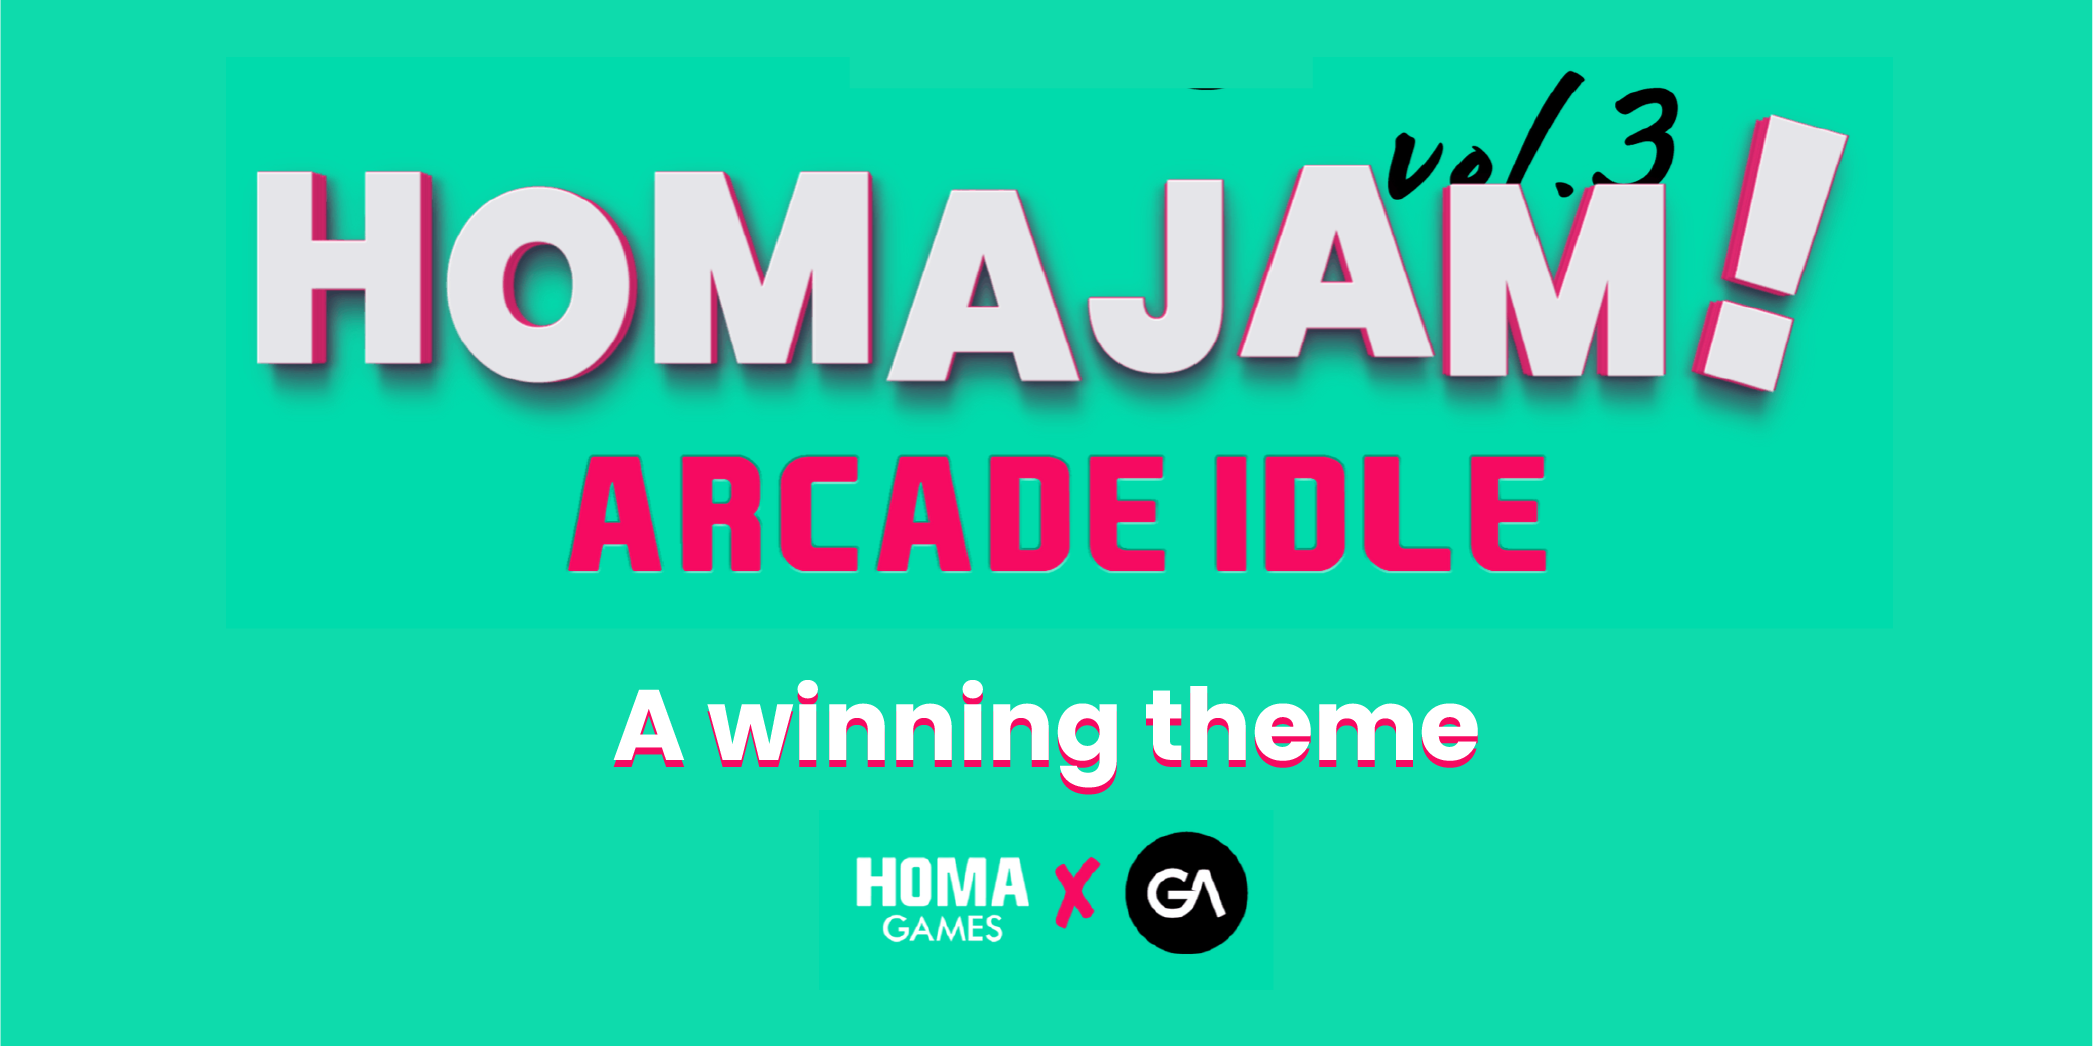 Arcade Idle тема победитель в HomaJam